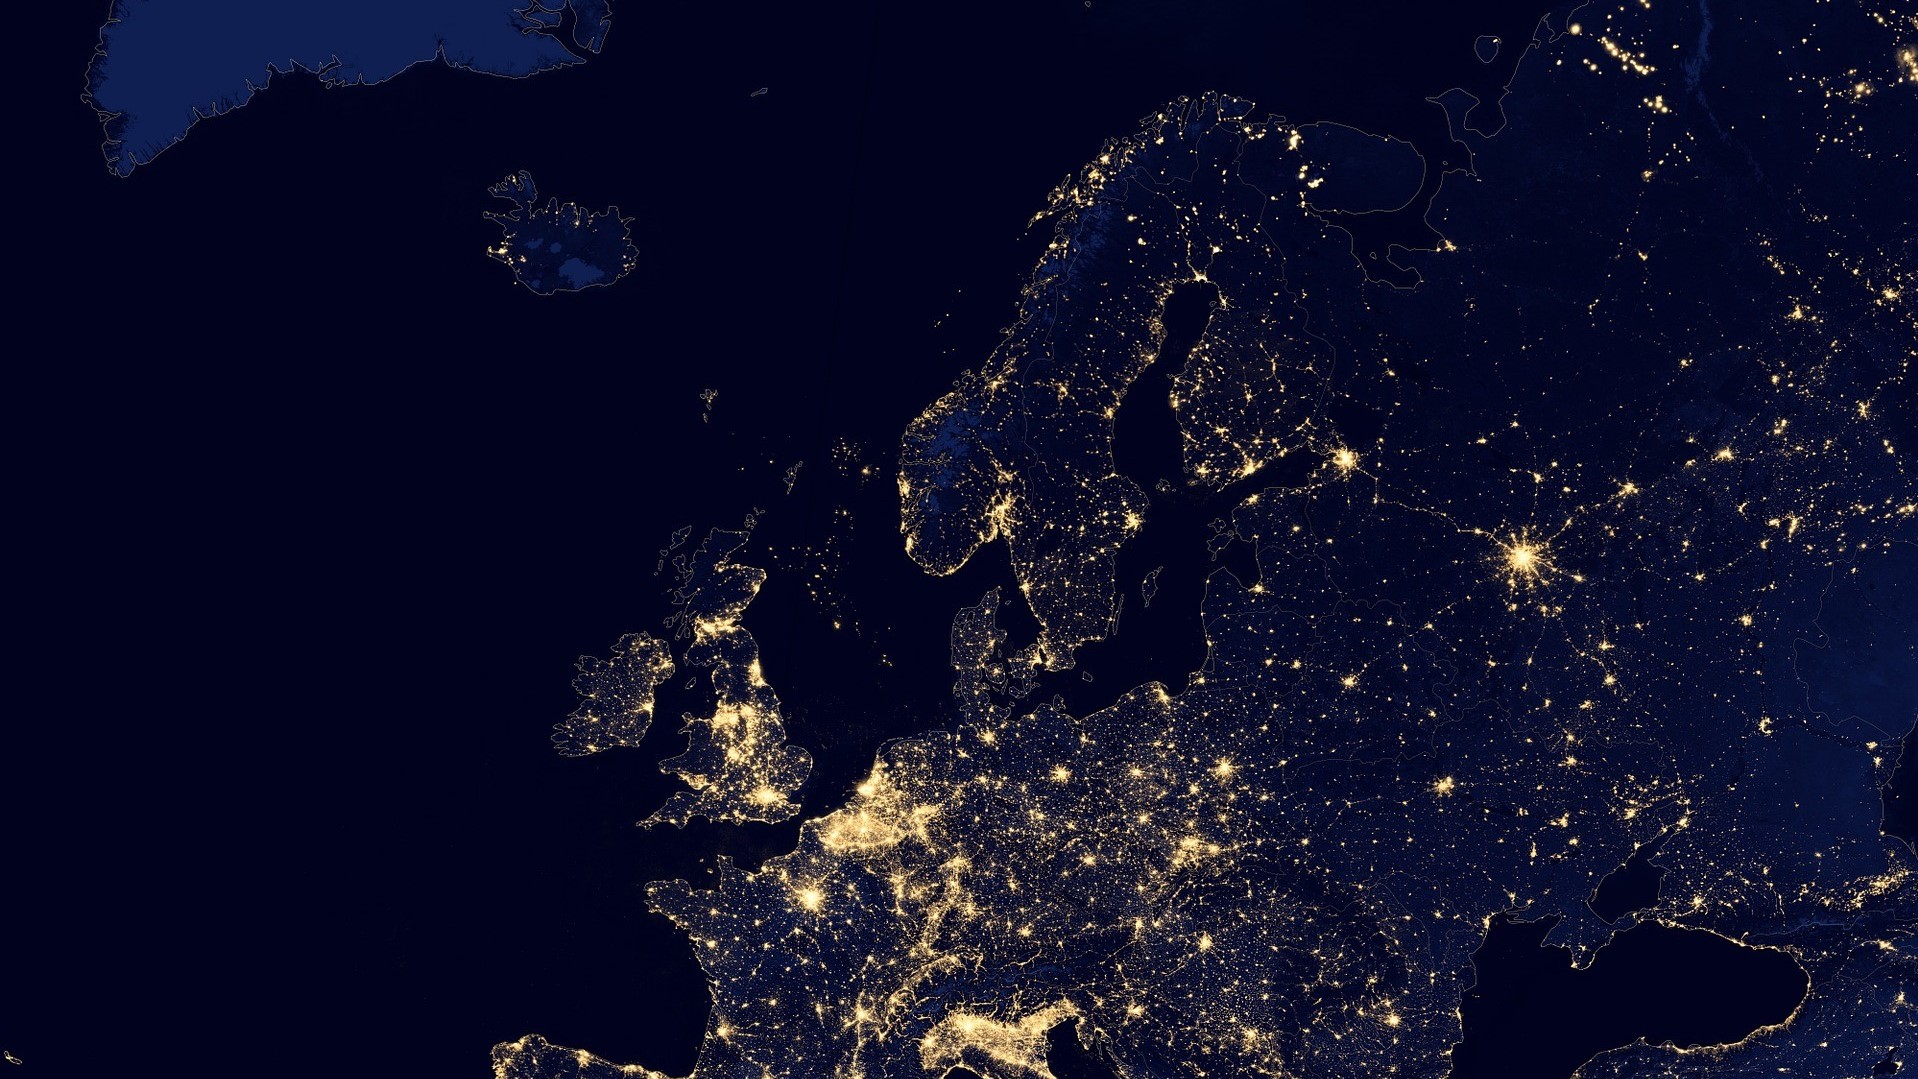 Europe during night